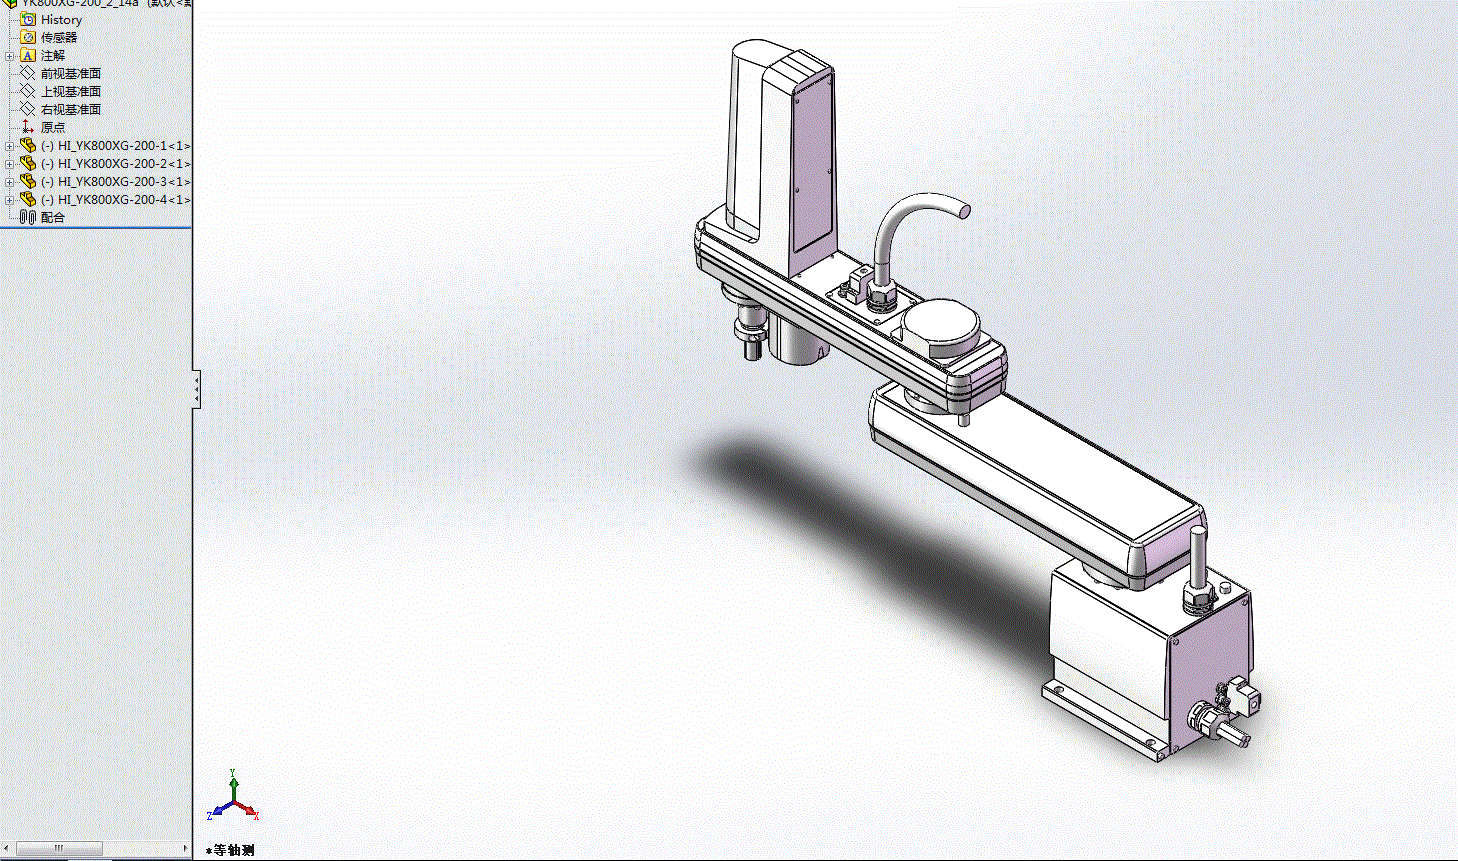 雅马哈四轴机械手3D模型YK800XG-200_2_14a.zip